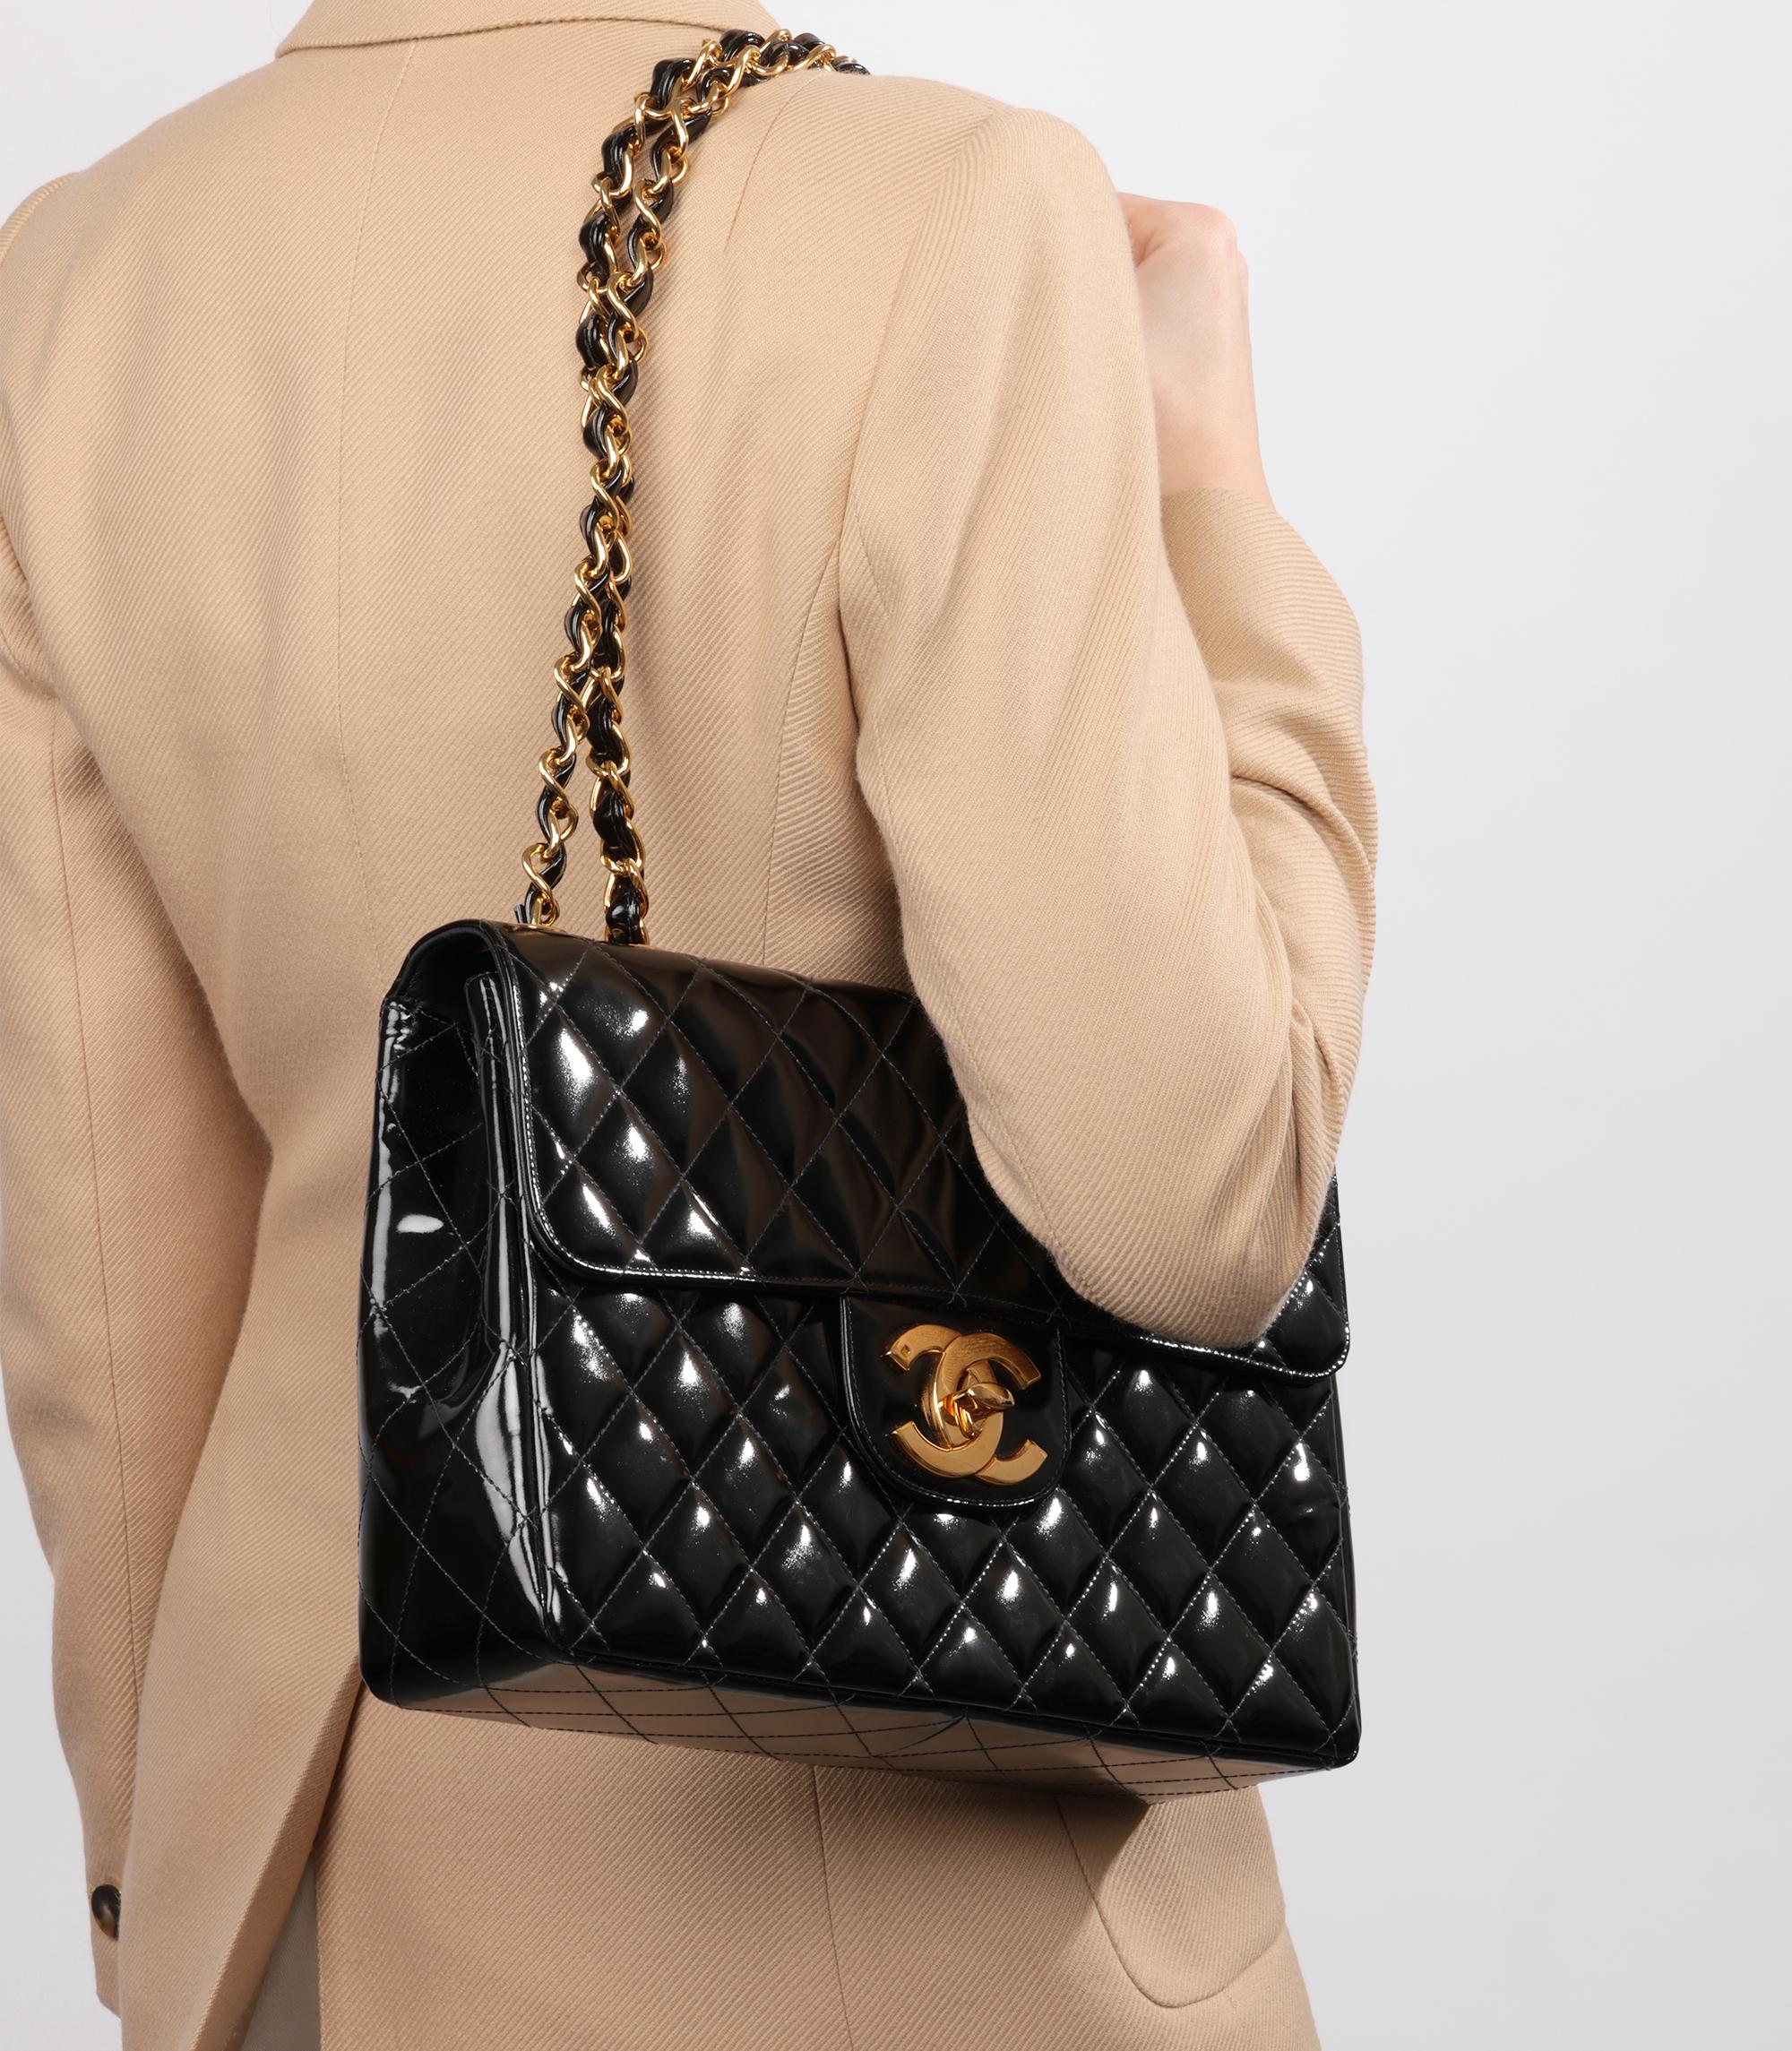 Chanel Black Quilted Patent Leather Vintage Jumbo XL Classic Single Flap Bag

Marque : Chanel
Modèle- Jumbo XL Classic Single Flap Bag
Type de produit- Croisé, Epaule
Numéro de série - 45*****
Age- Circa 1996
Accompagné de : sac à poussière Chanel,